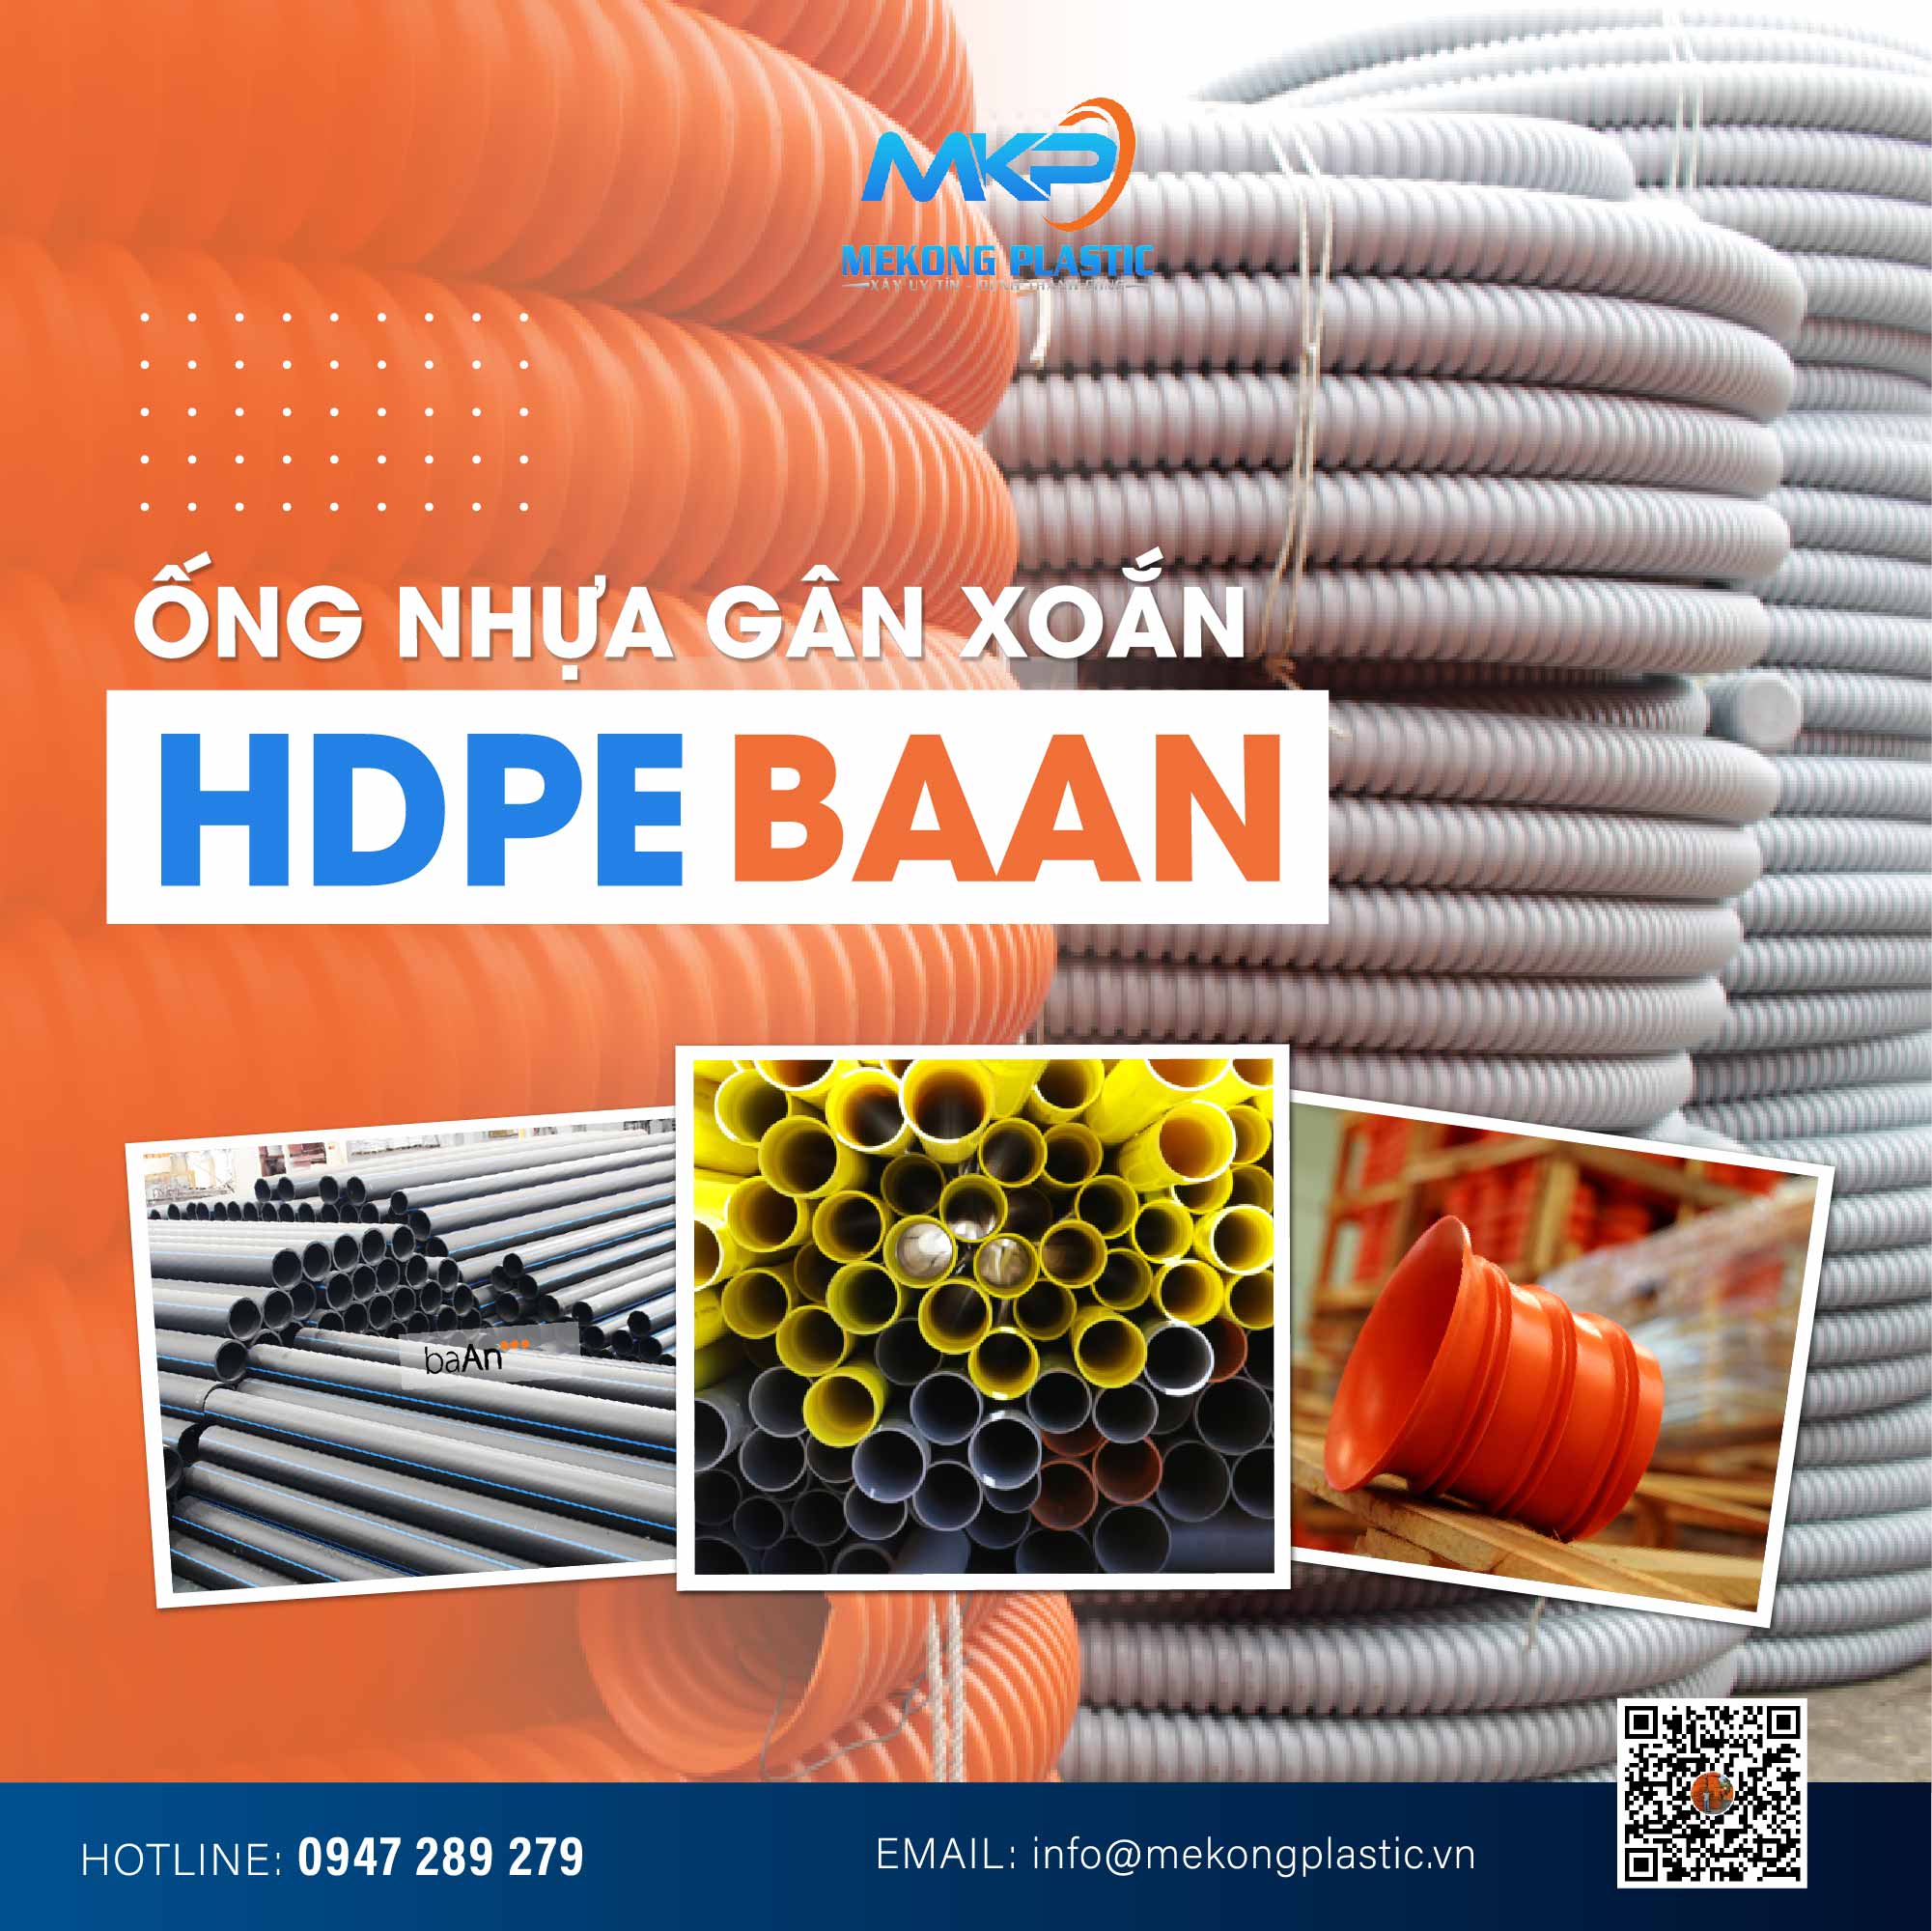 Tiêu chí lựa chọn nhà cung cấp ống nhựa HDPE